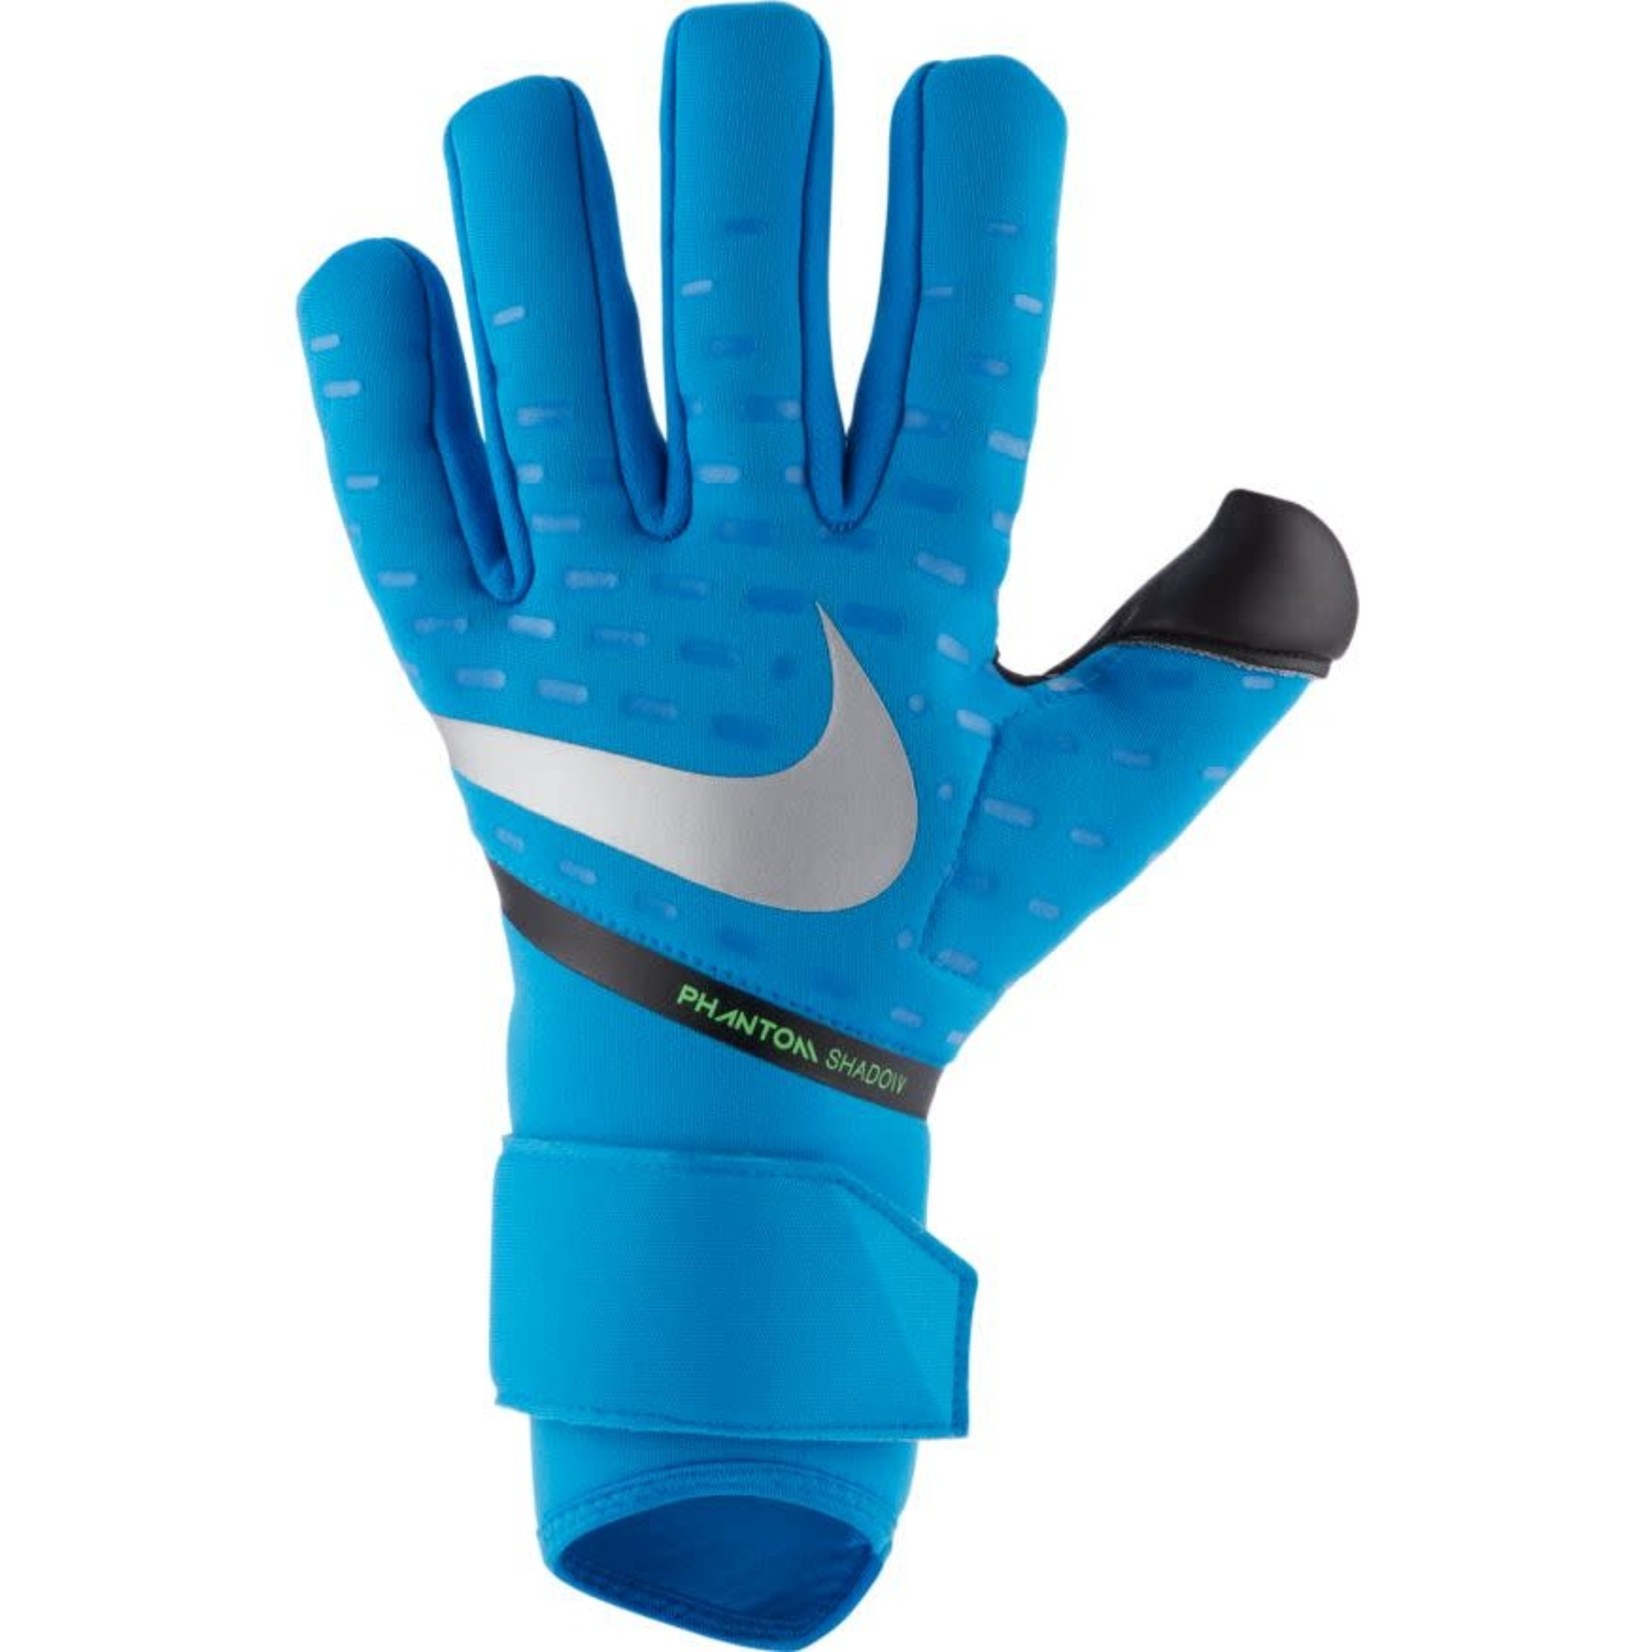 nike phantom shadow soccer goalkeeper gloves